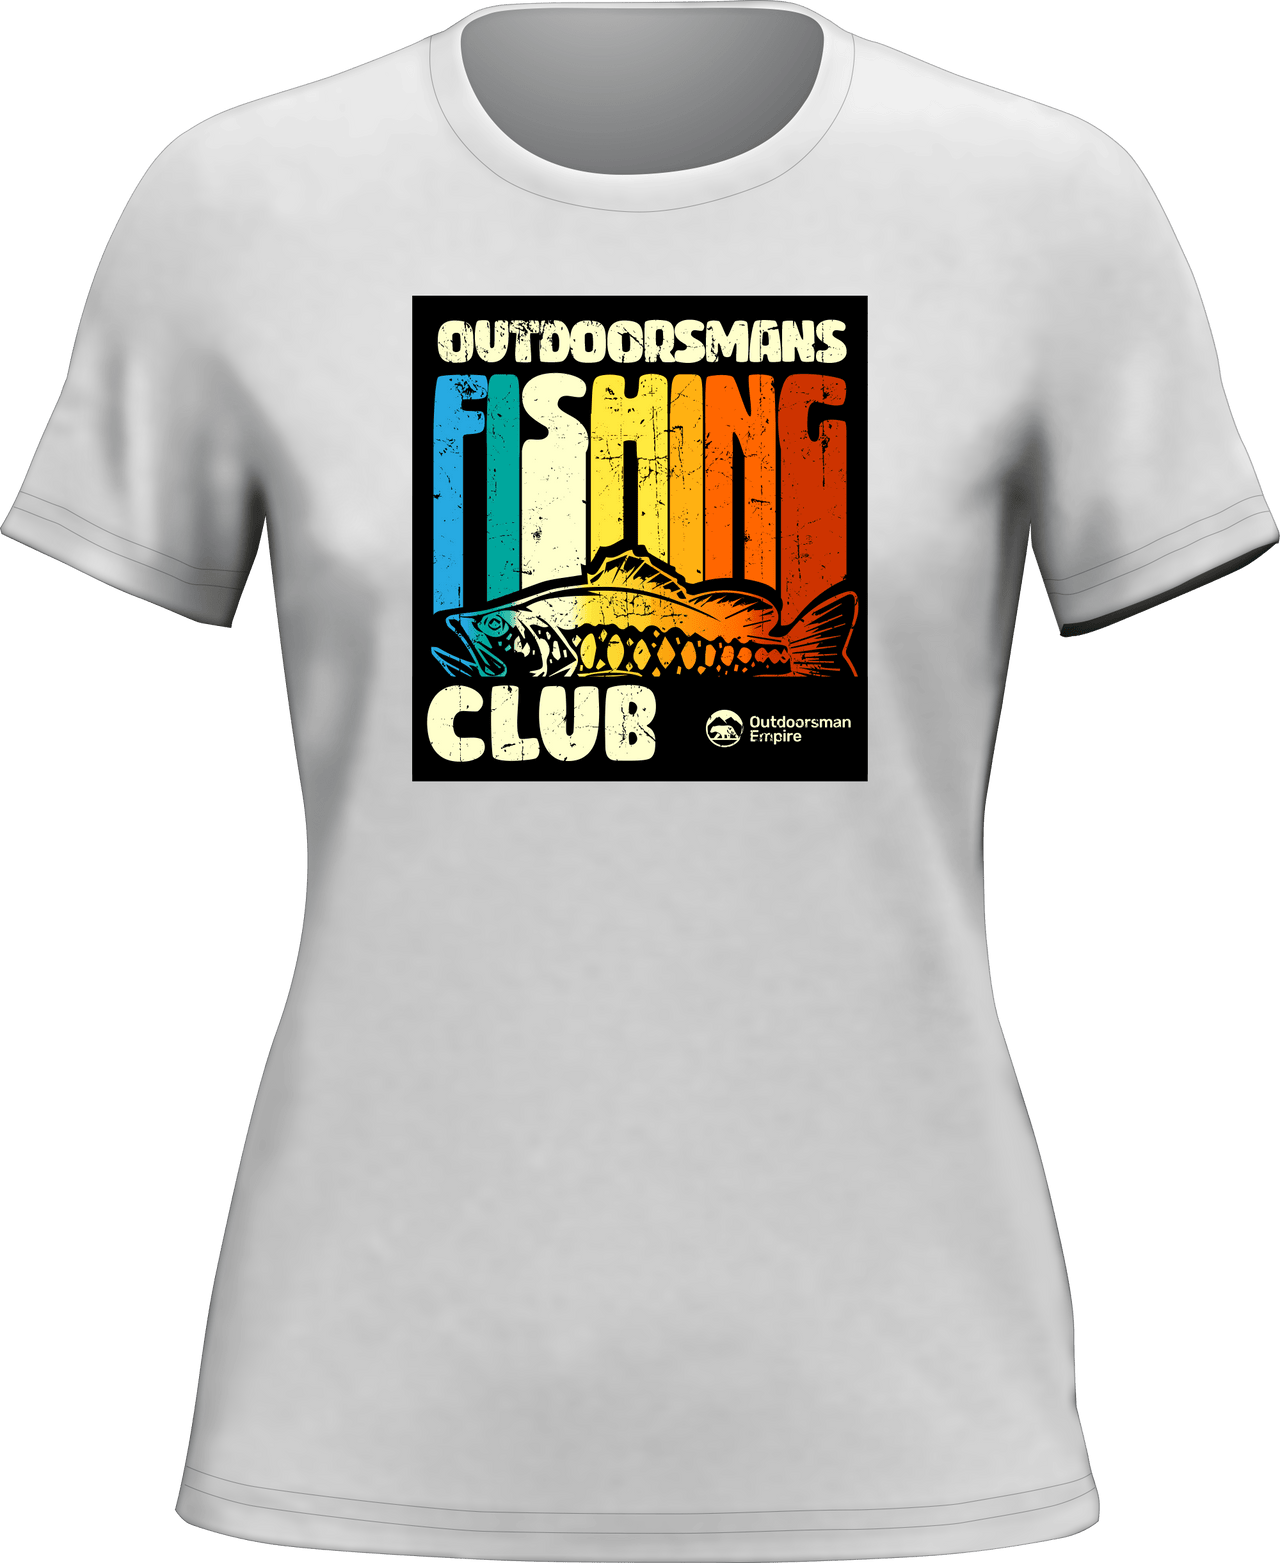 Outdoorsman Fishing Club T-Shirt for Women